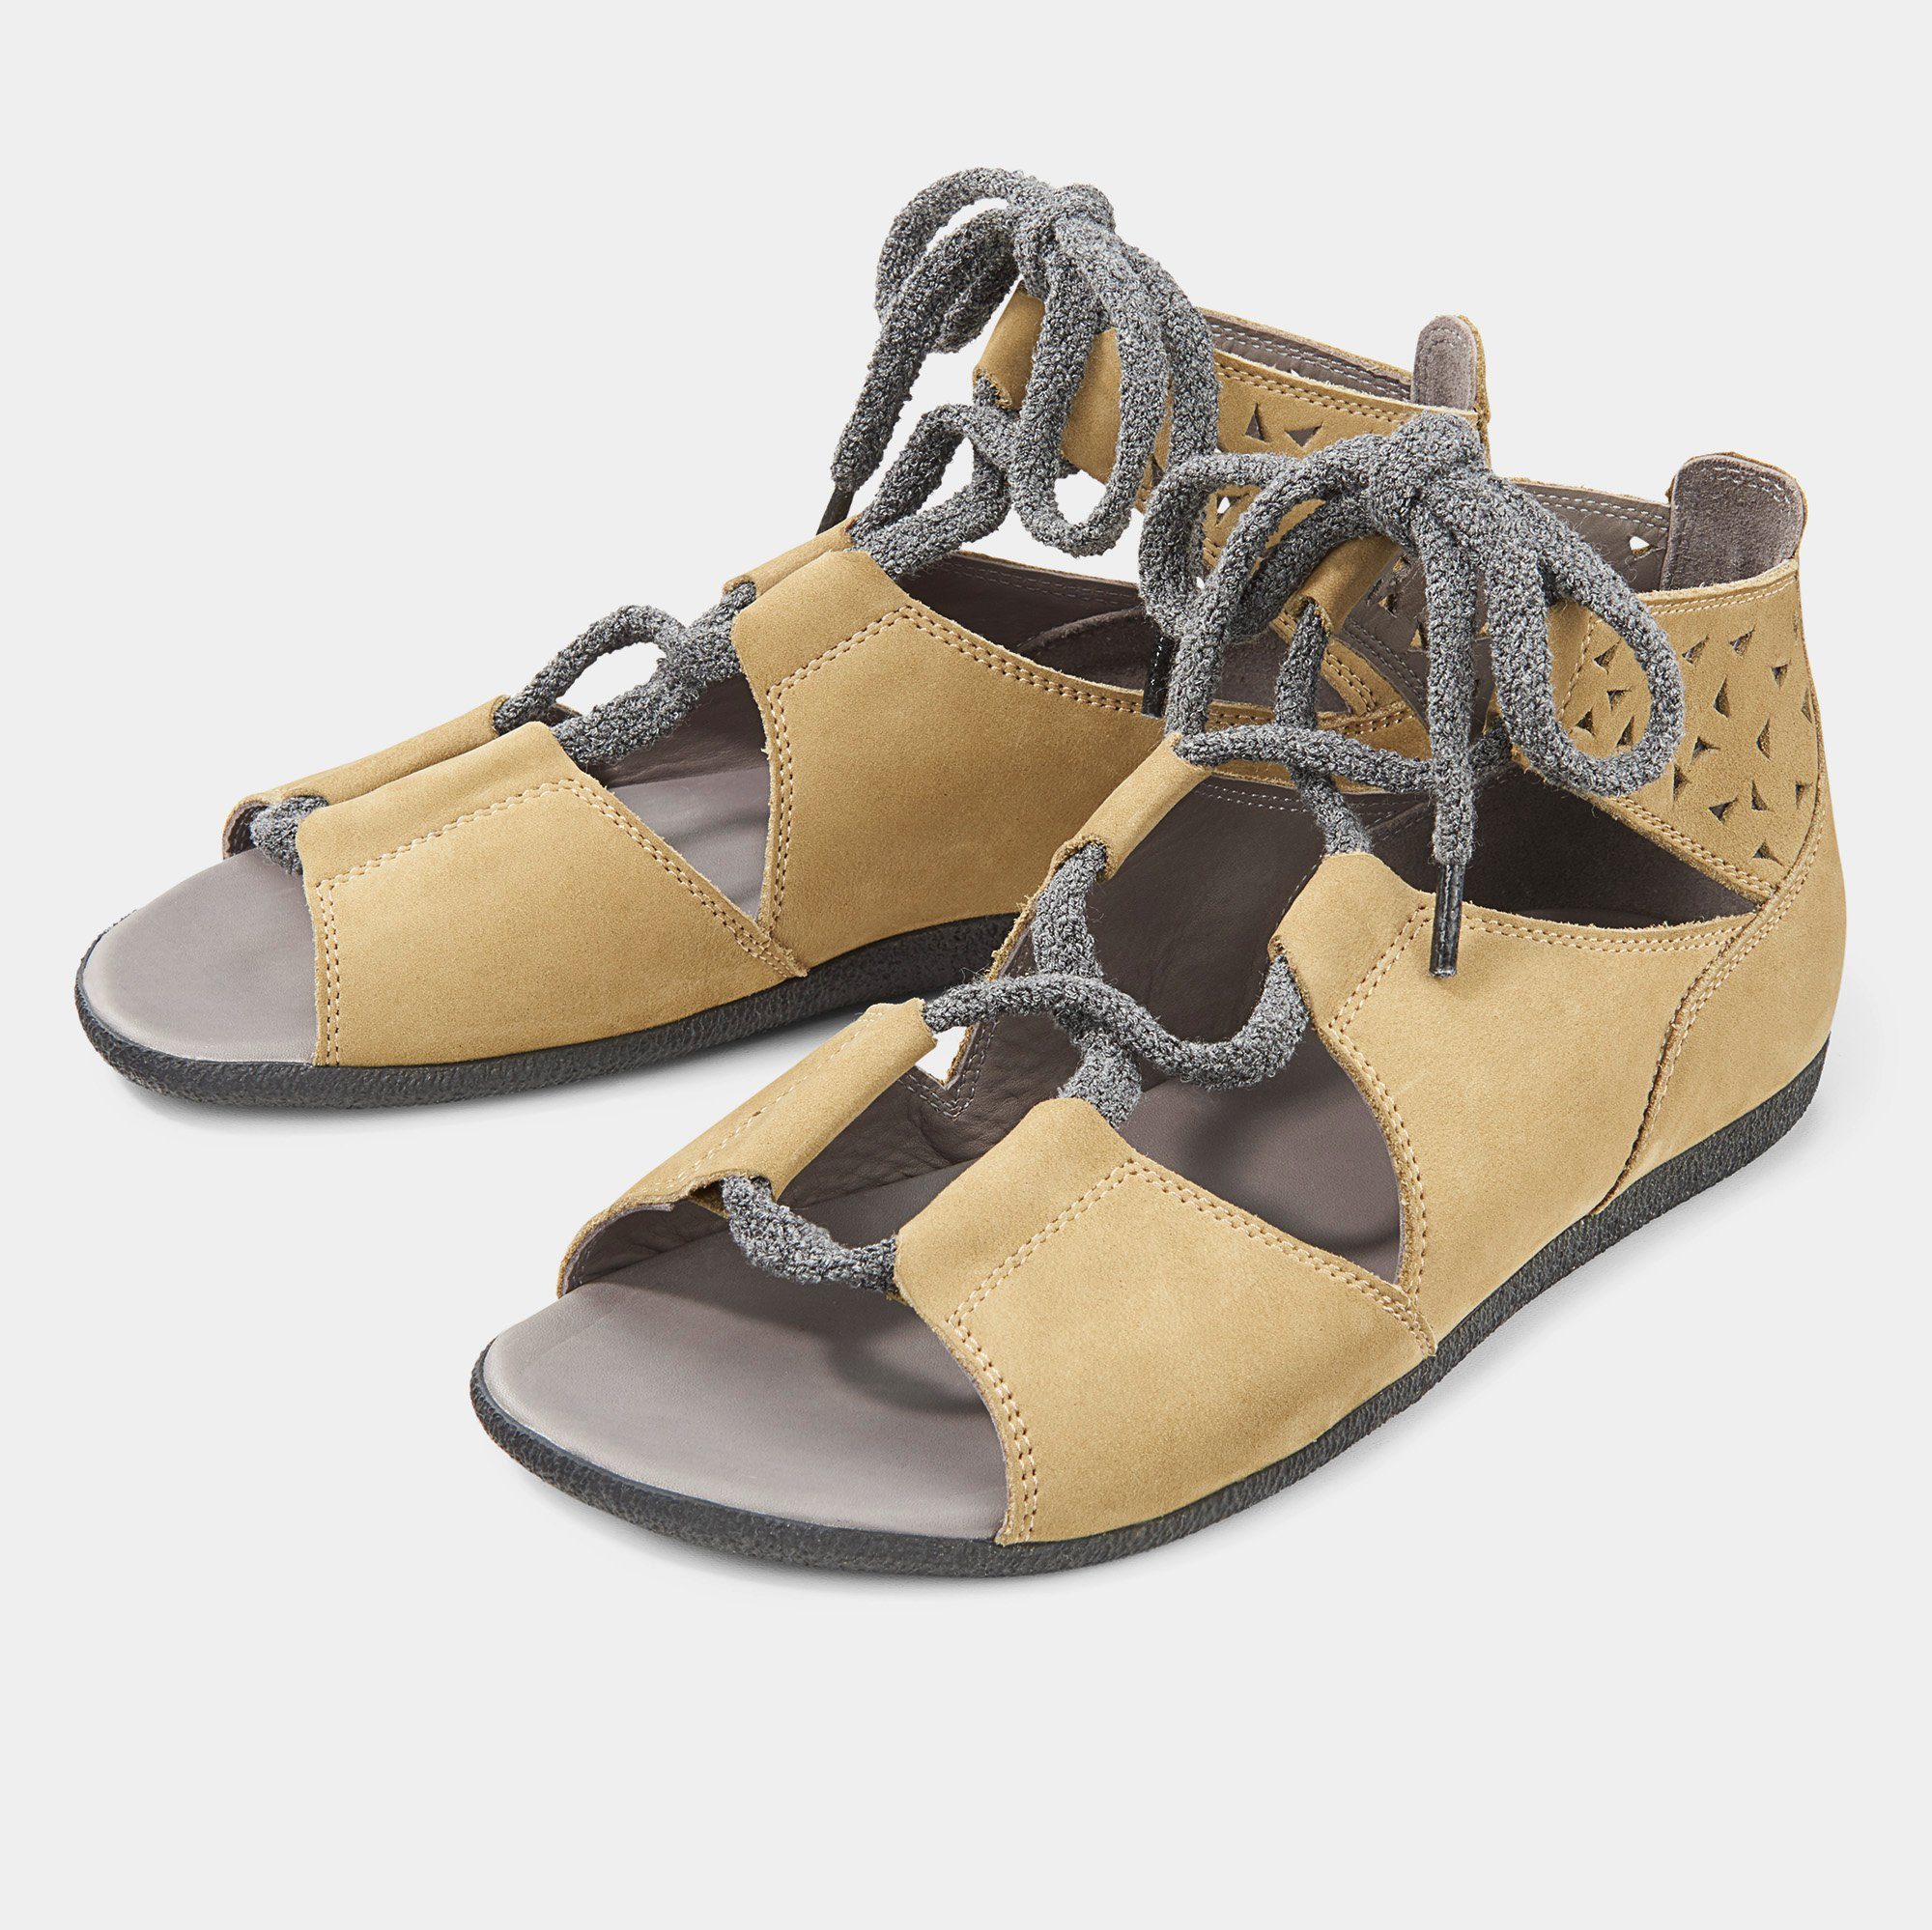 BÄR Damenschuh - Modell Jacky in der Farbe Oliv Sandale Aus echtem Leder